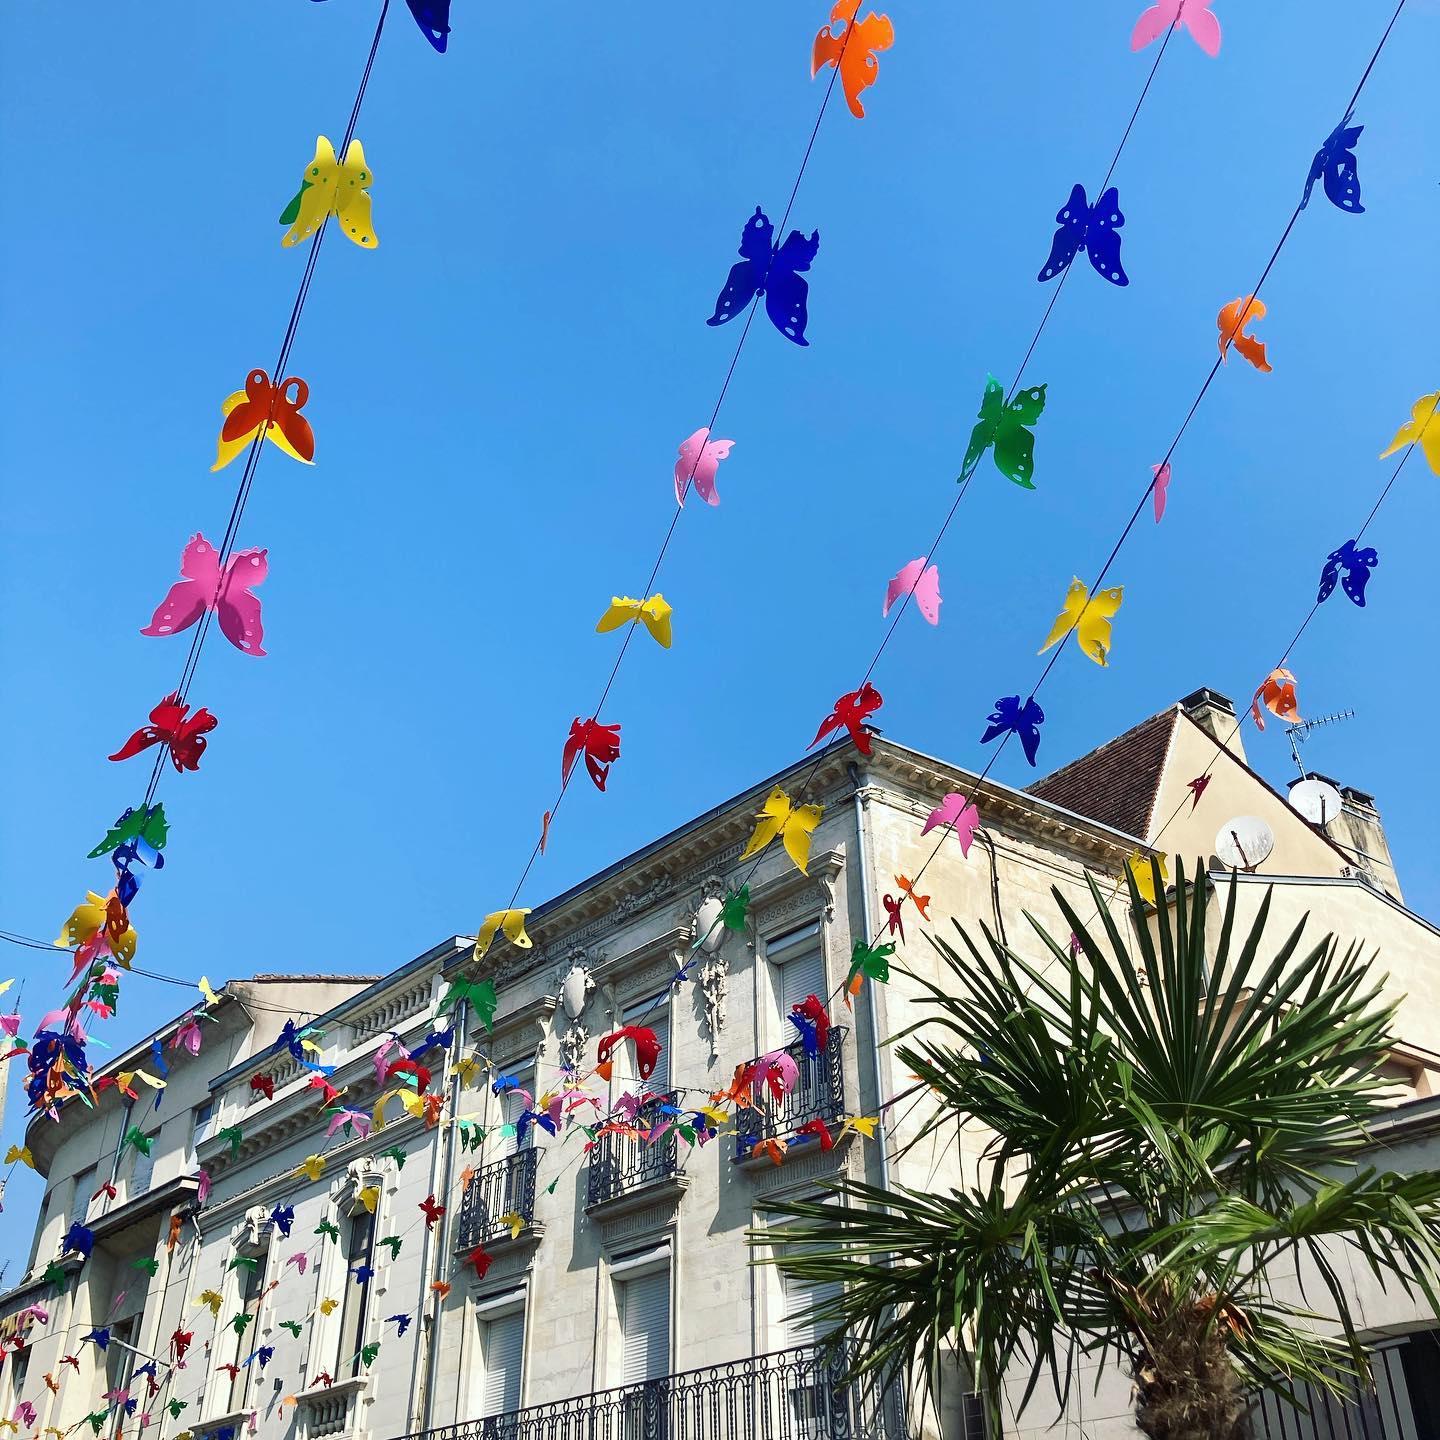 Après les parapluies, les ballons... voici les papillons 🦋 qui égayent les rues de la vieille ville de Bergerac. En plus du ciel bleu, ça anime bien les rues... les autres étant remplies de grosses fleurs 🌼 #bergerac #bergeractourisme #bergeracmaville #perigordnoir #paysdebergerac